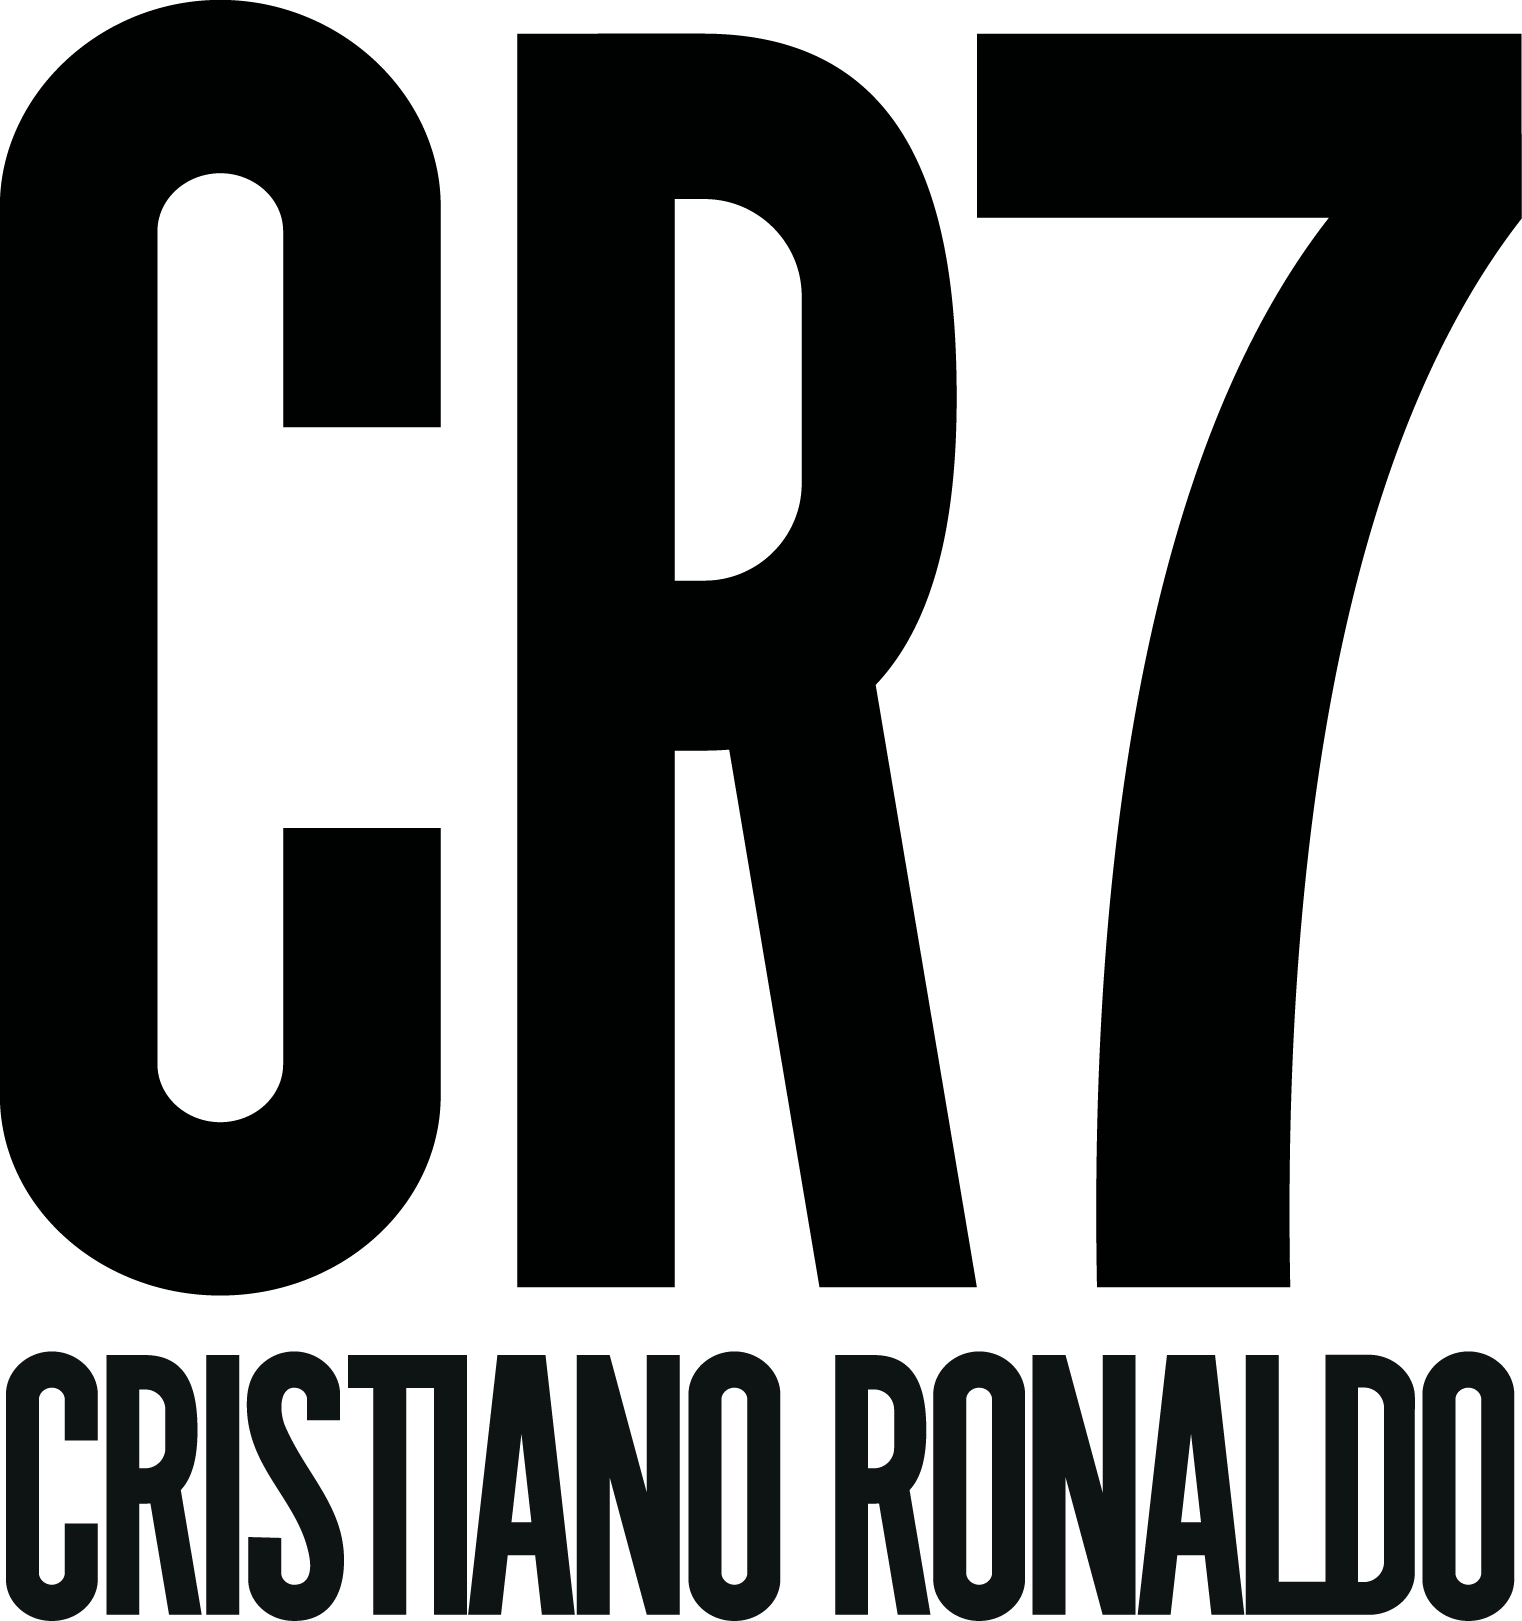 CR7 Logo - CR7 Logo (Cristiano Ronaldo) Vector Free Download